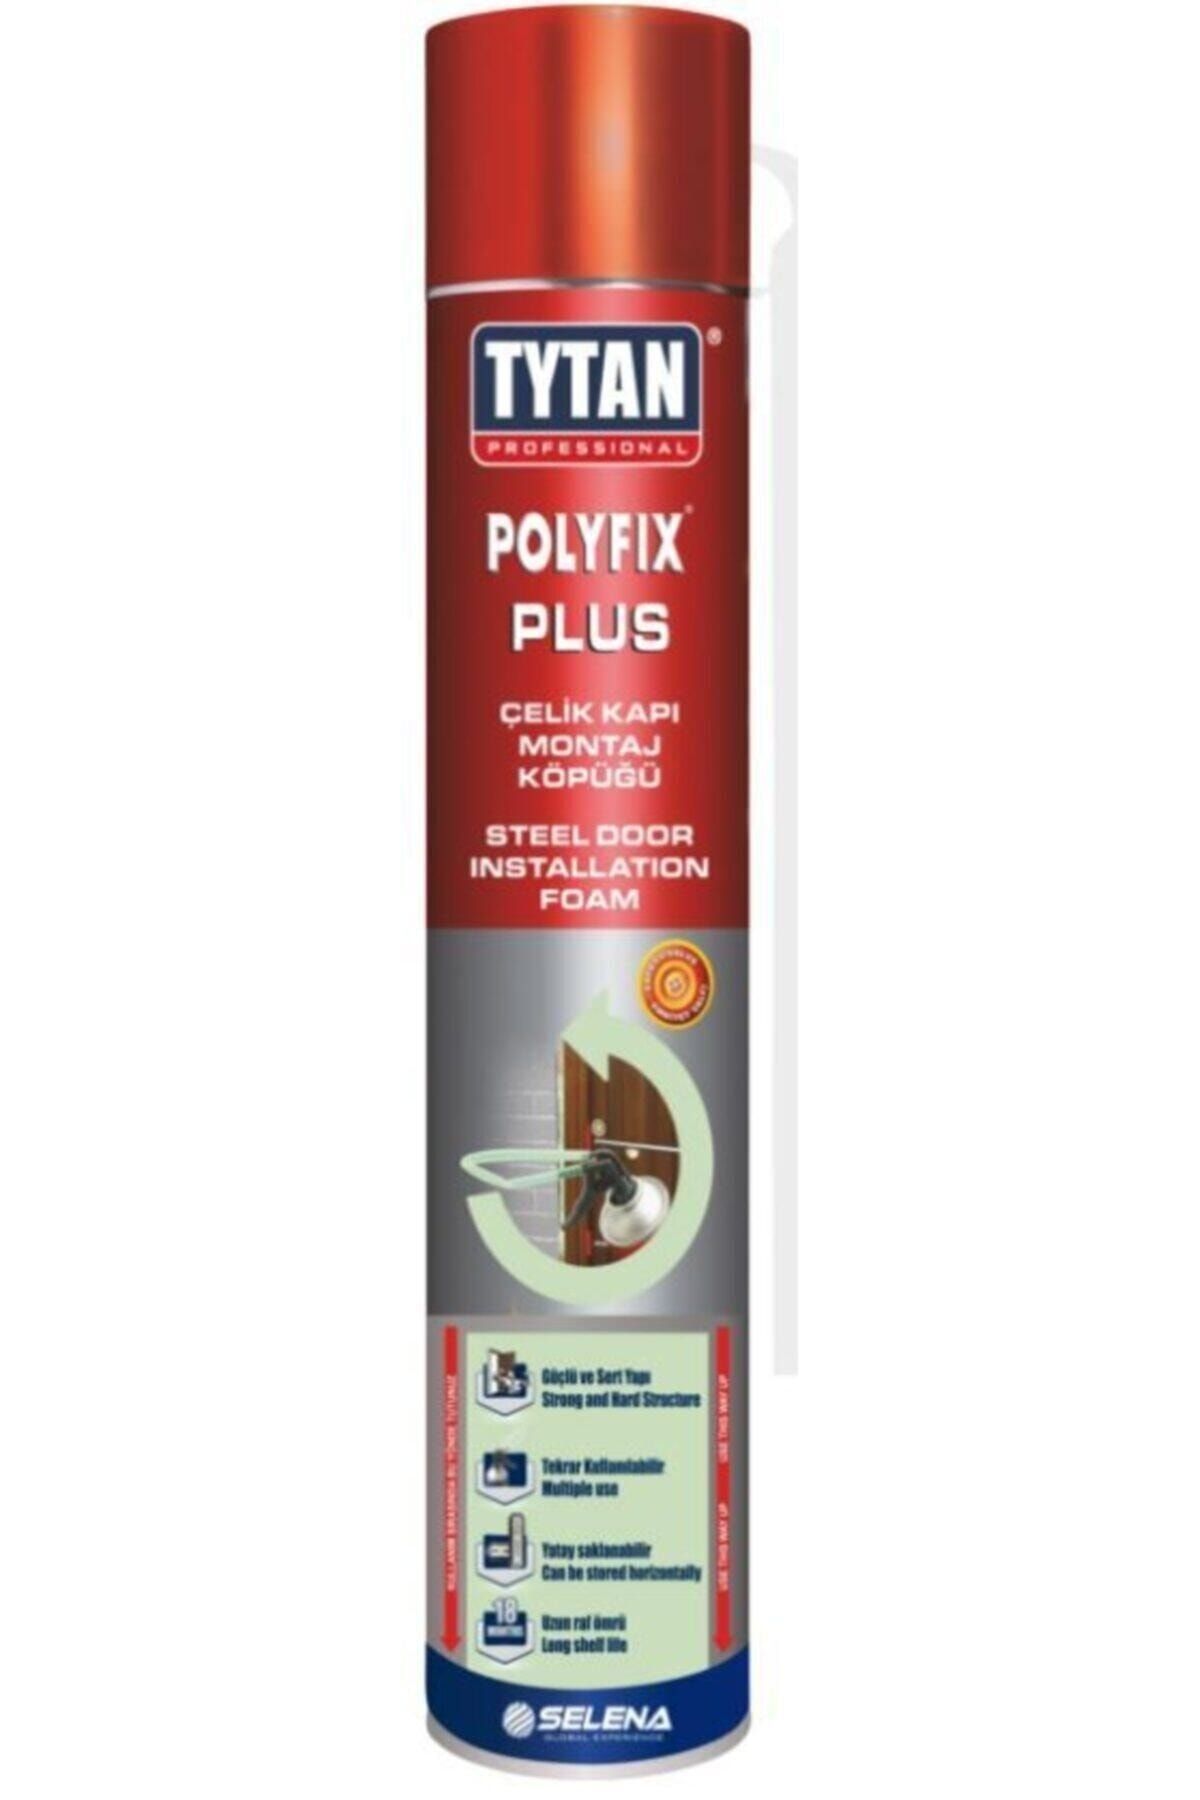 TYTAN Polyfix Plus Poliüretan 750 gr Sıkma Çelik Kapı Montaj Köpüğü Hediyelidir